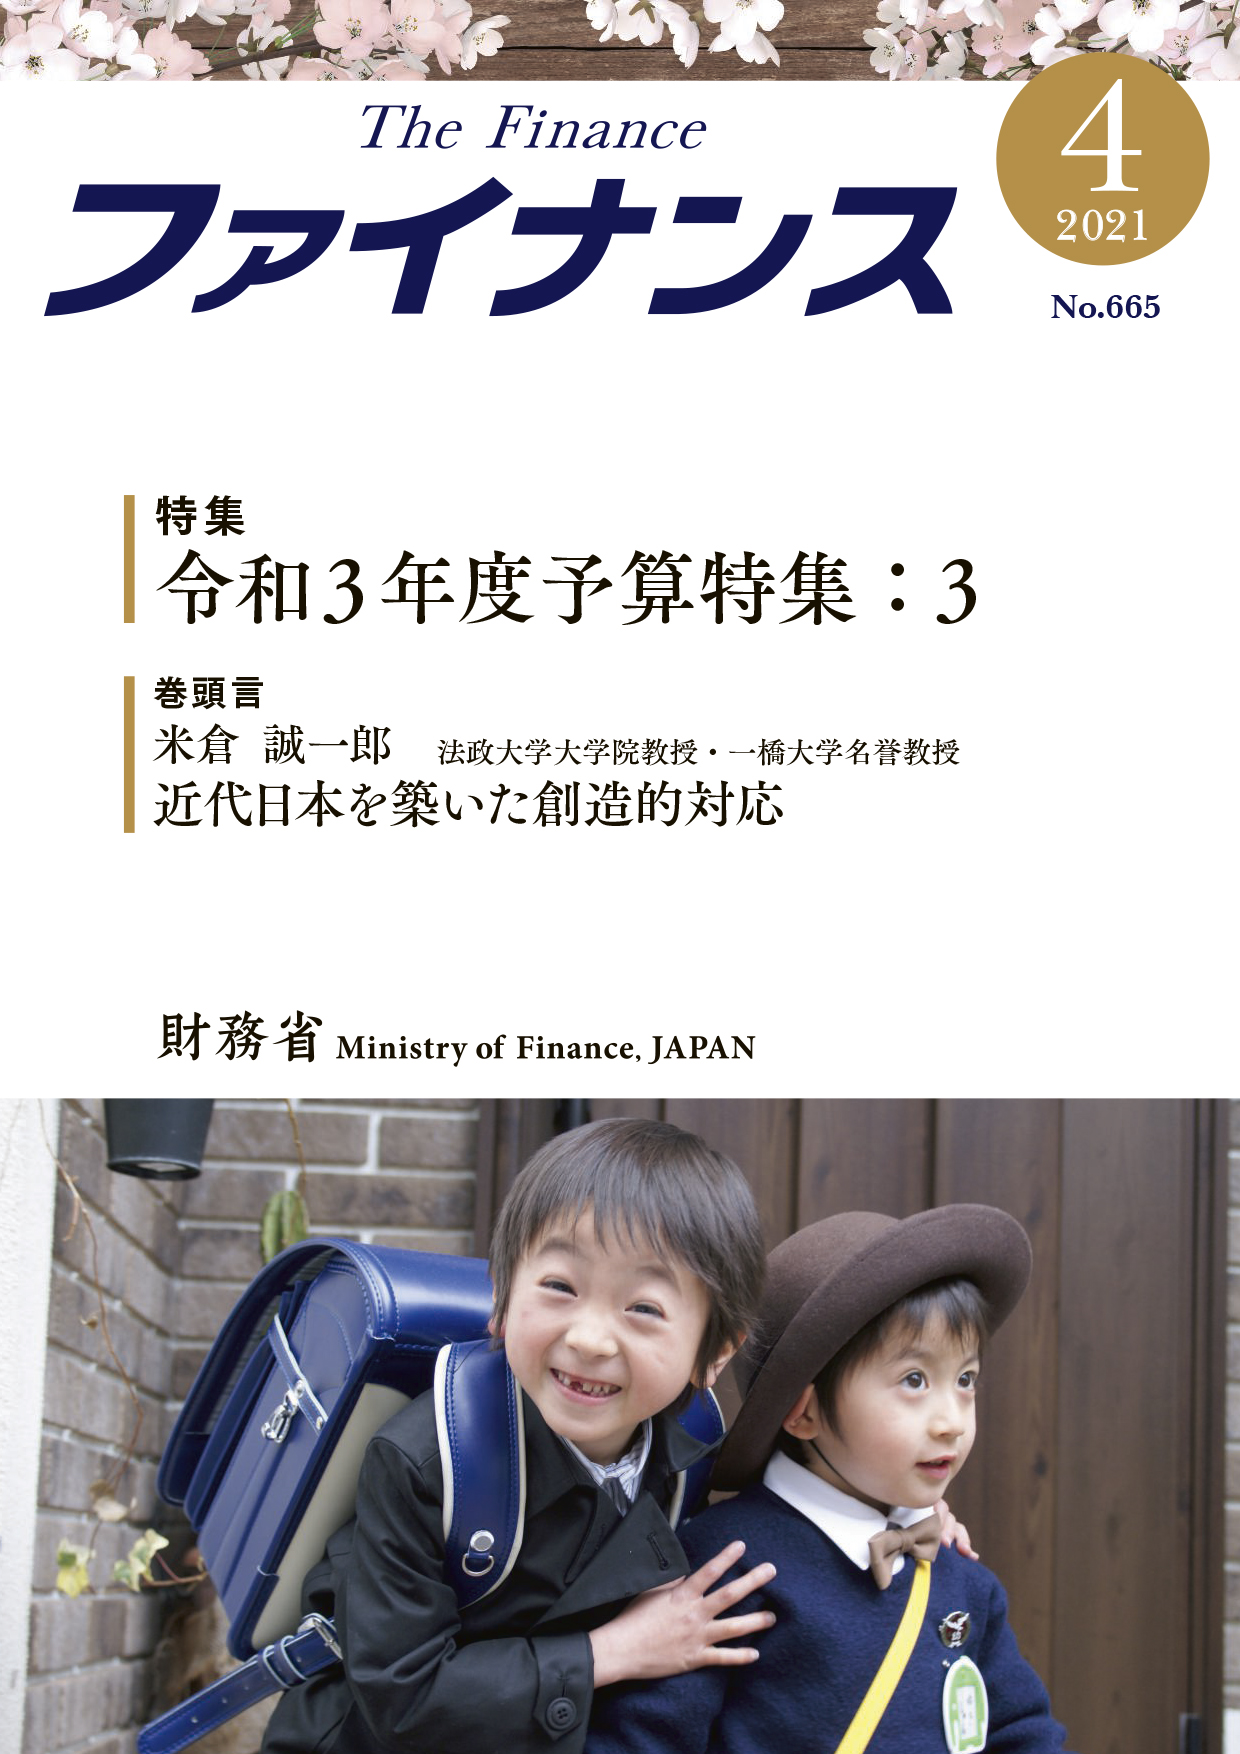 財務省広報誌「ファイナンス」令和3年4月号表紙写真:保育園入園式